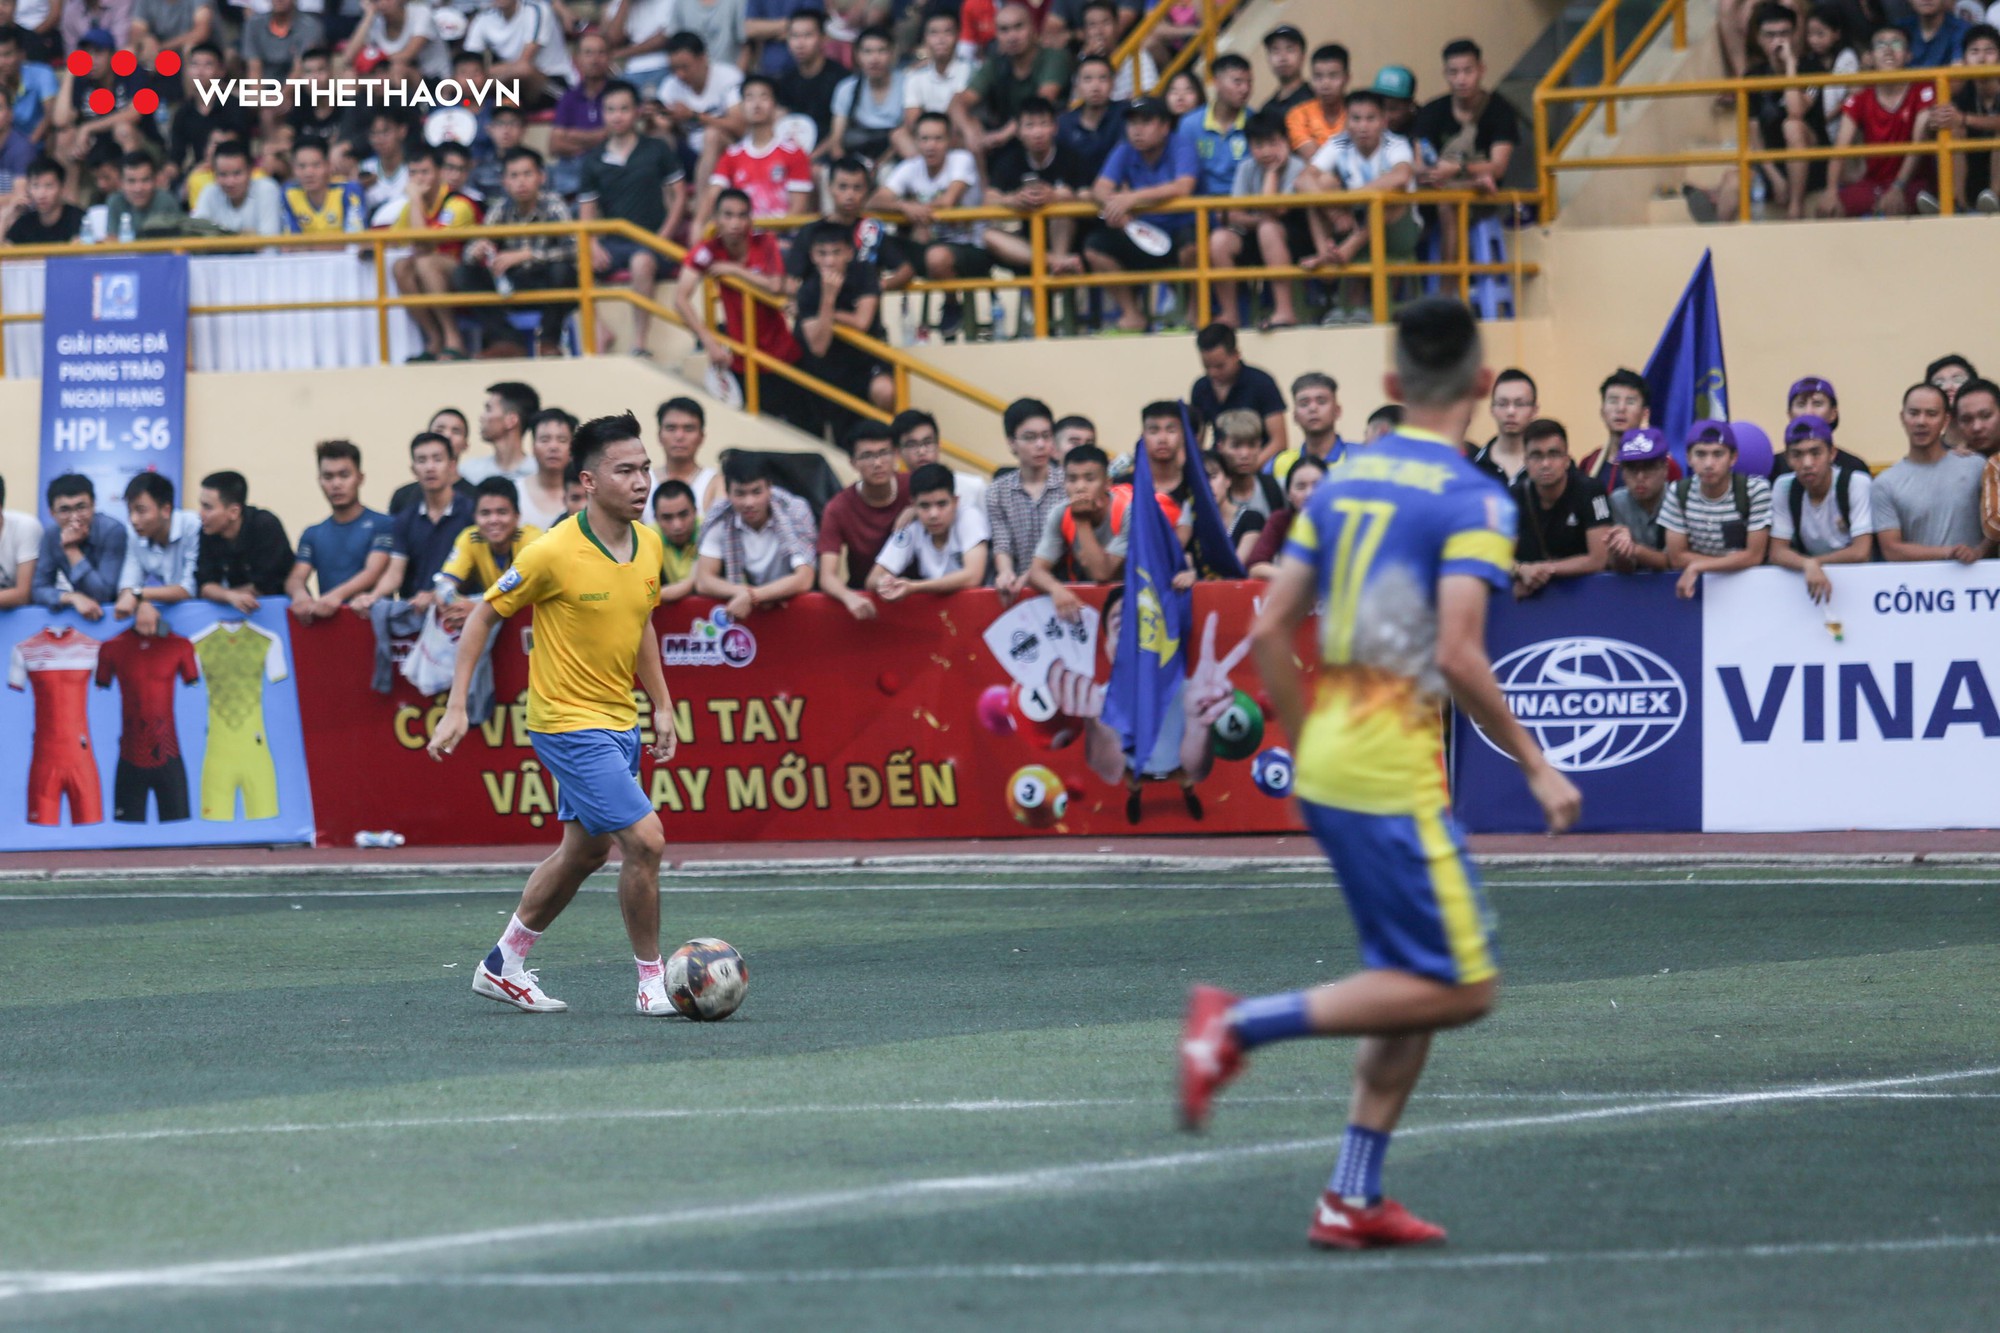 Nghiêm Xuân Tú và sao V.League hội tụ tại giải bóng đá phong trào HPL-S6 - Ảnh 3.